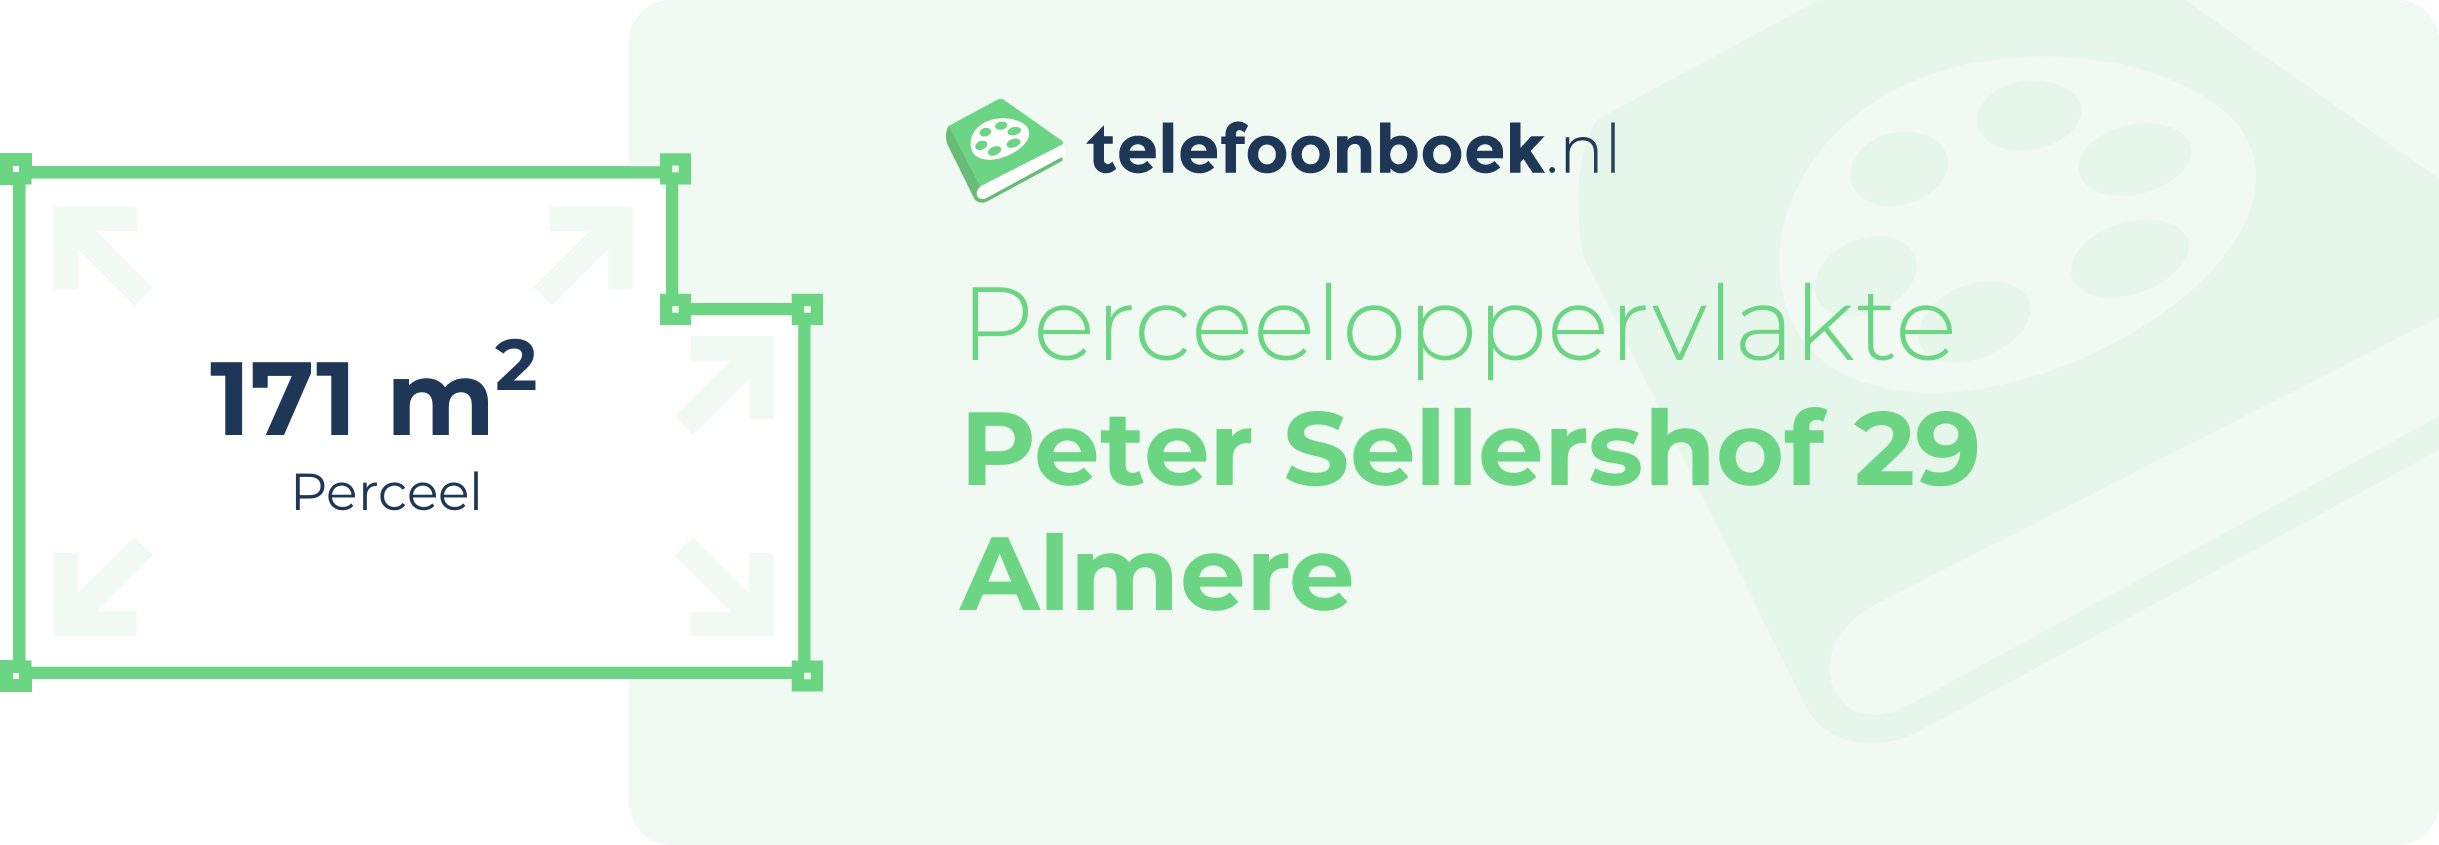 Perceeloppervlakte Peter Sellershof 29 Almere